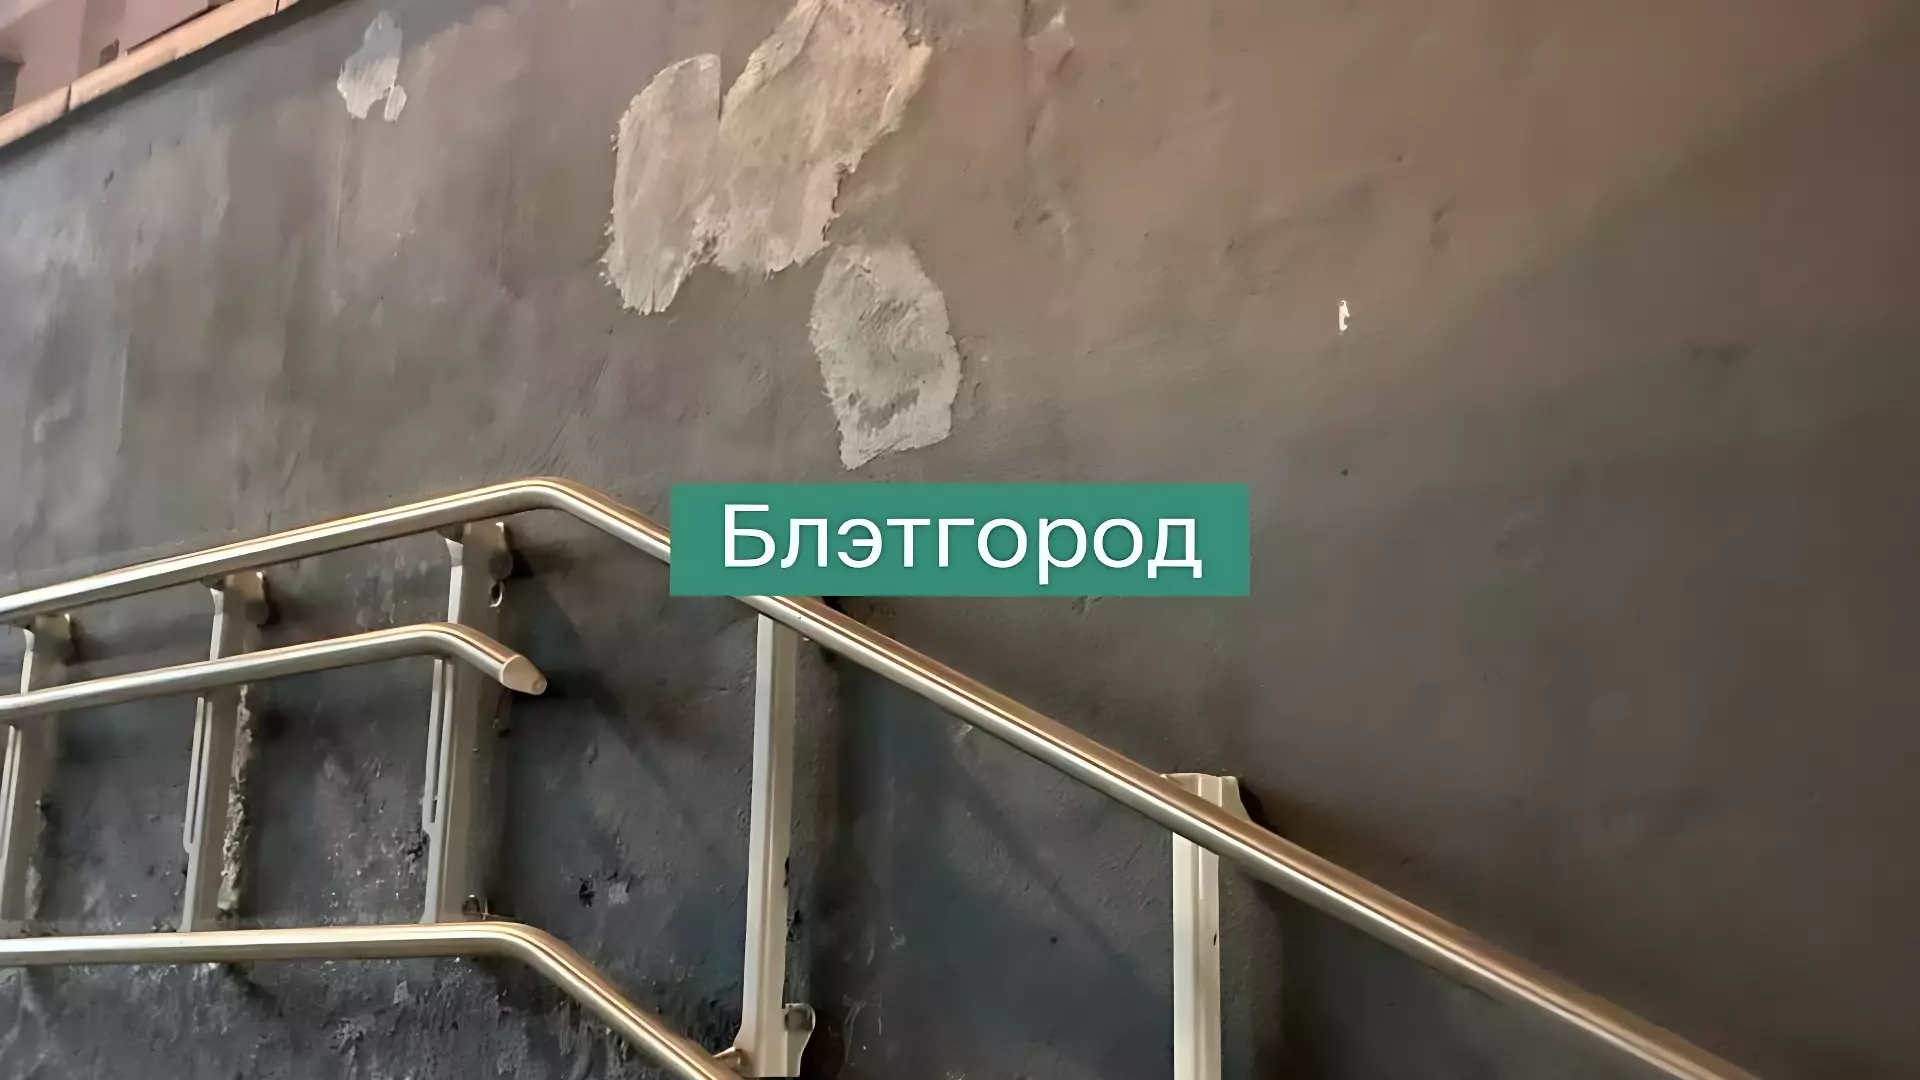 В подземном переходе в центре Белгорода стены покрылись высолами